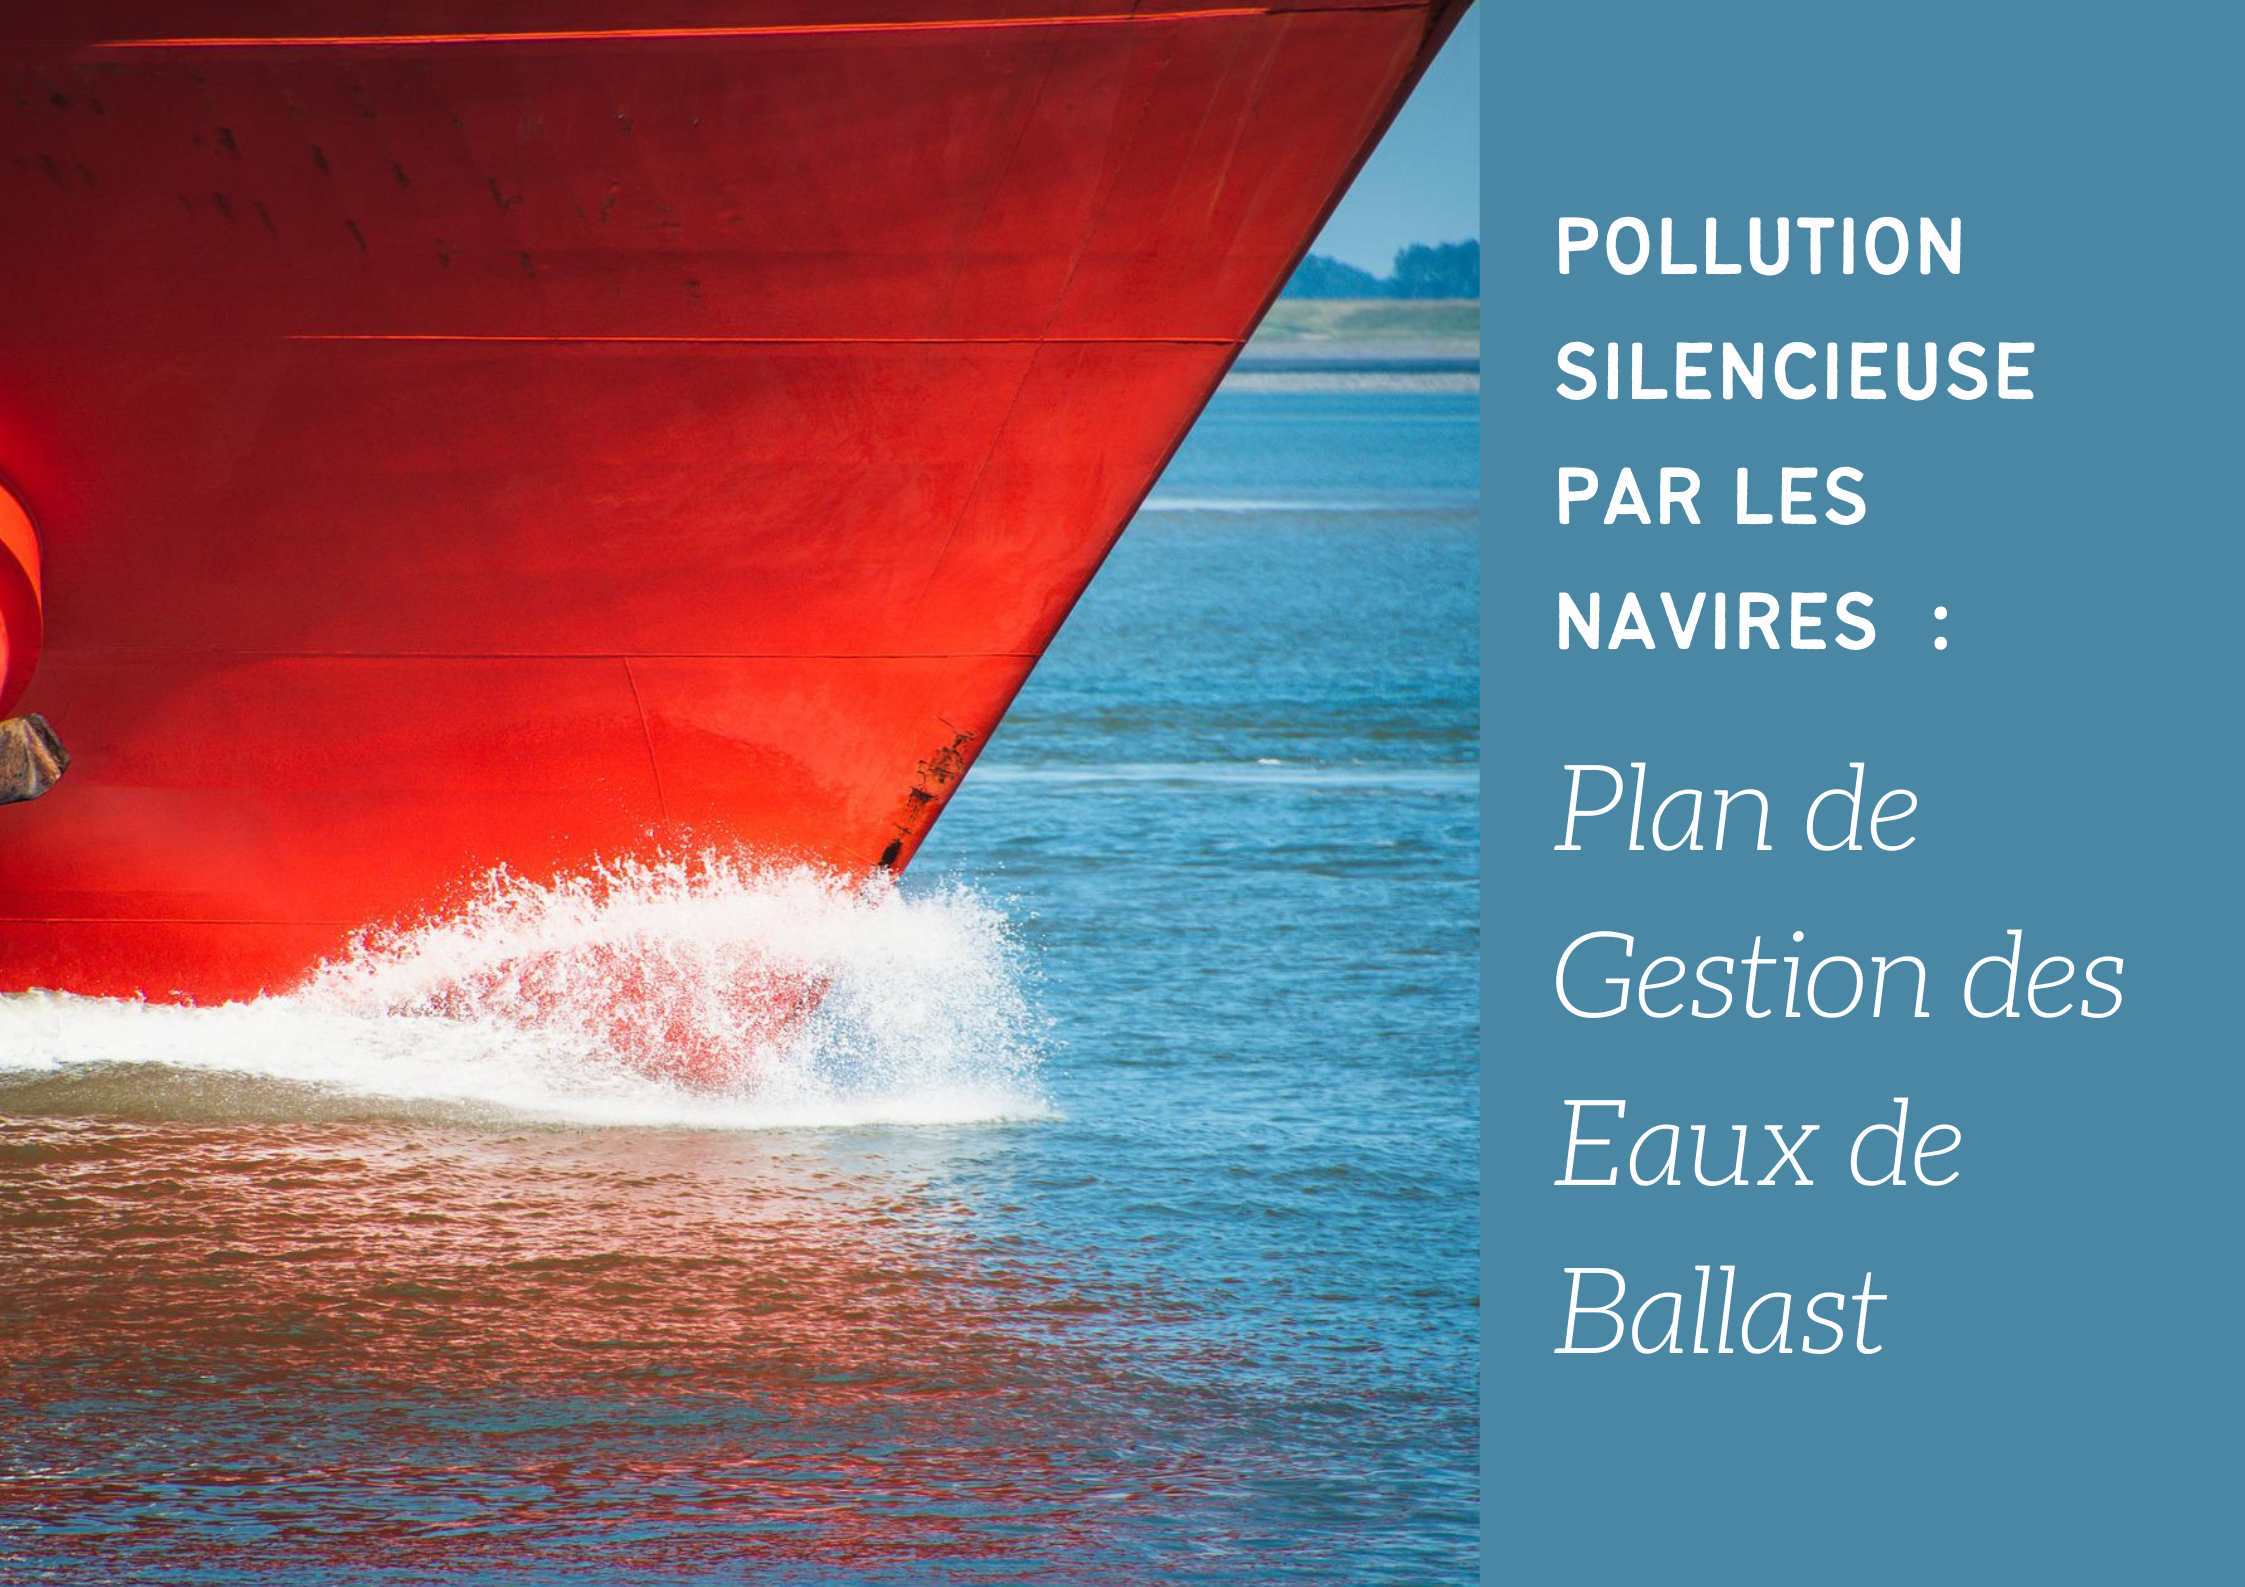 Pollution silencieuse par les navires – Plan de Gestion des Eaux de Ballast (fin)